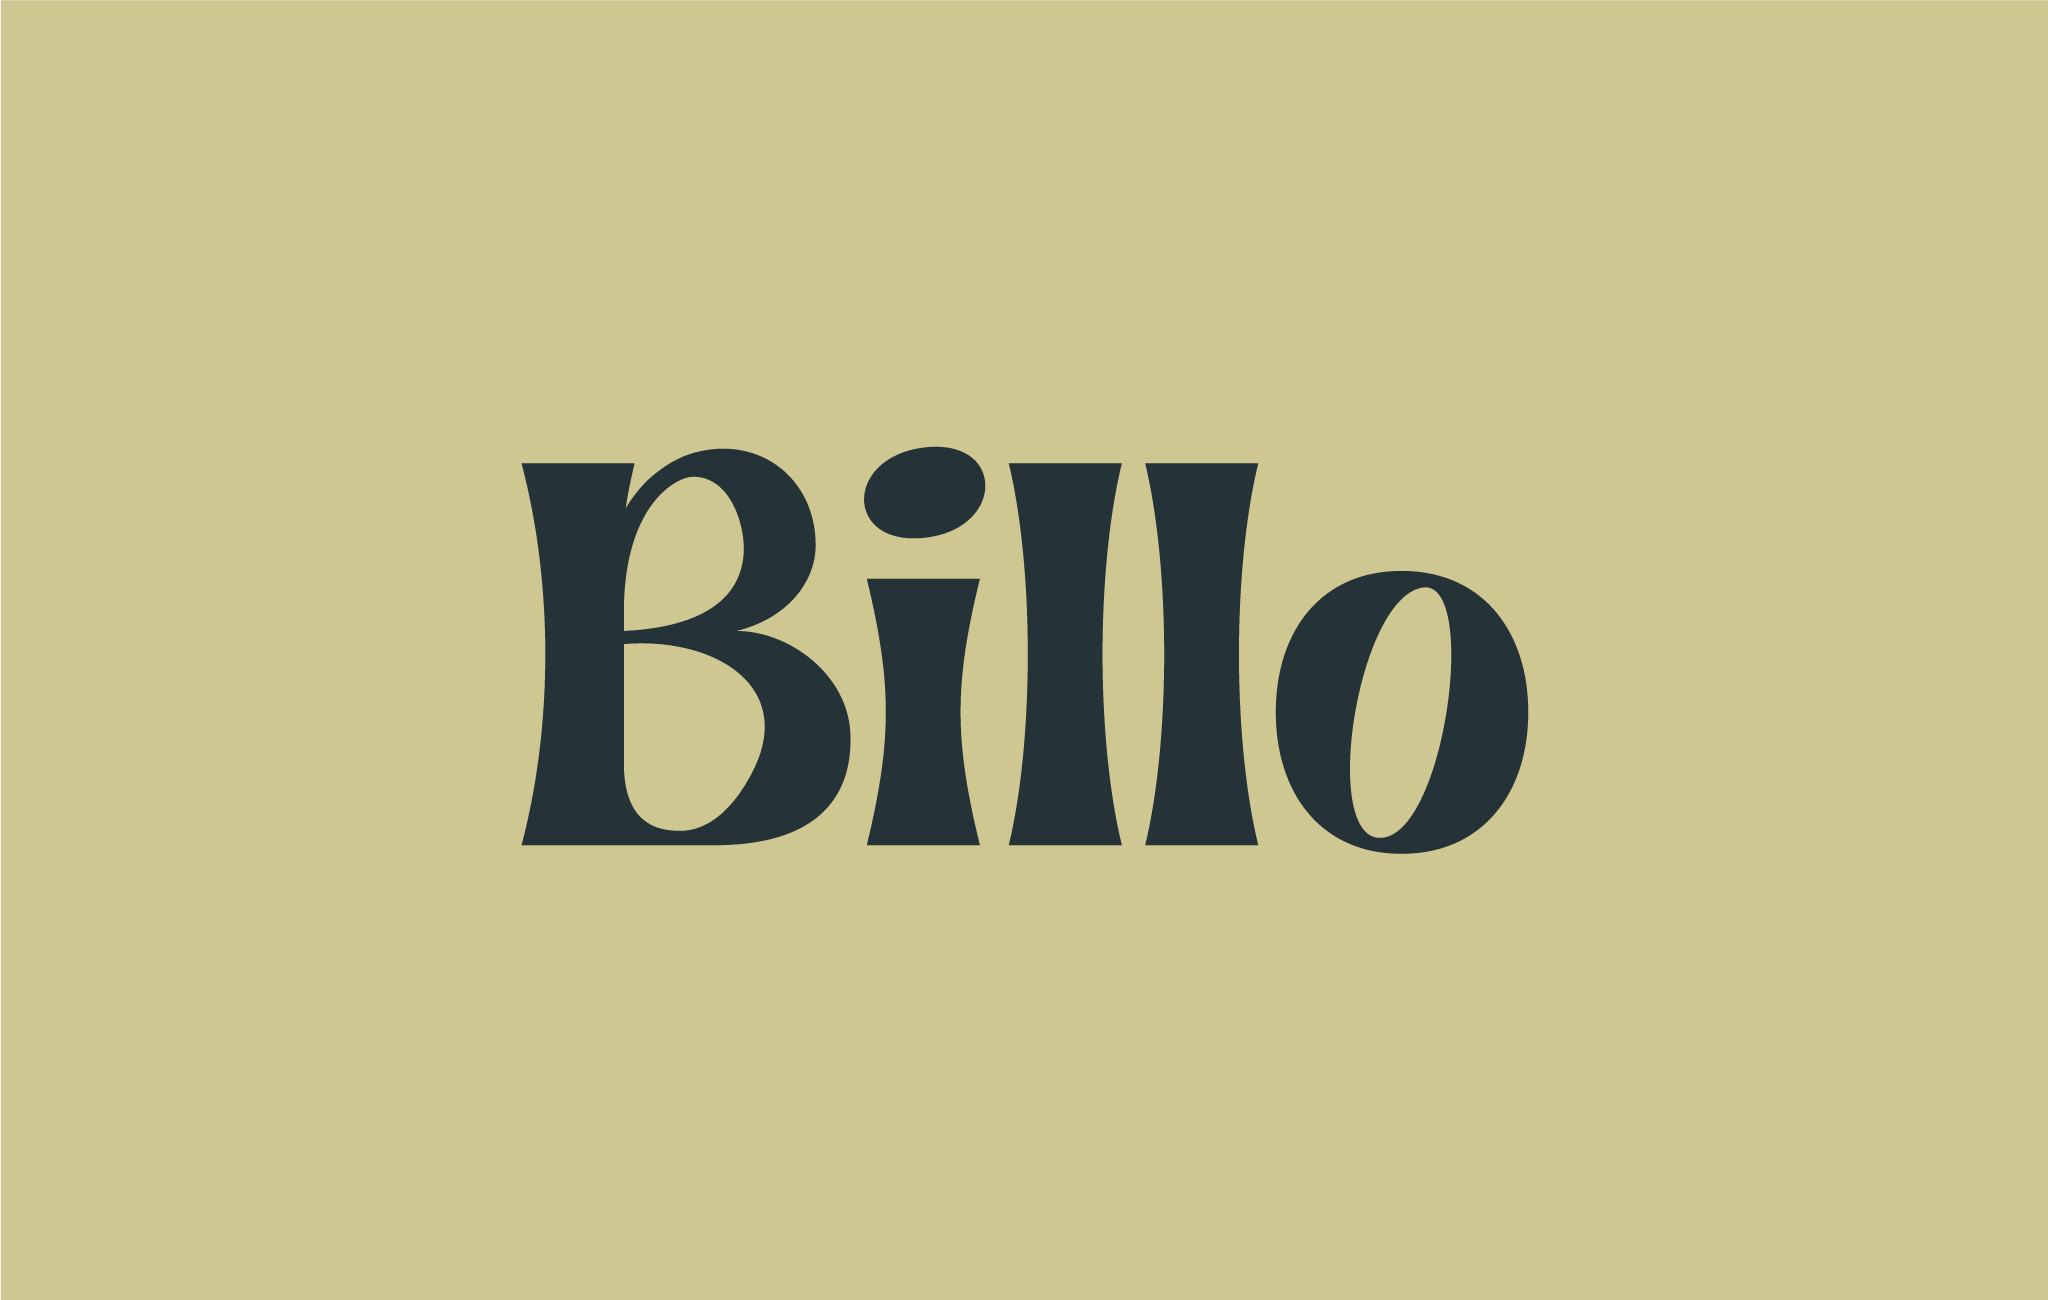 BILLO – Bosque